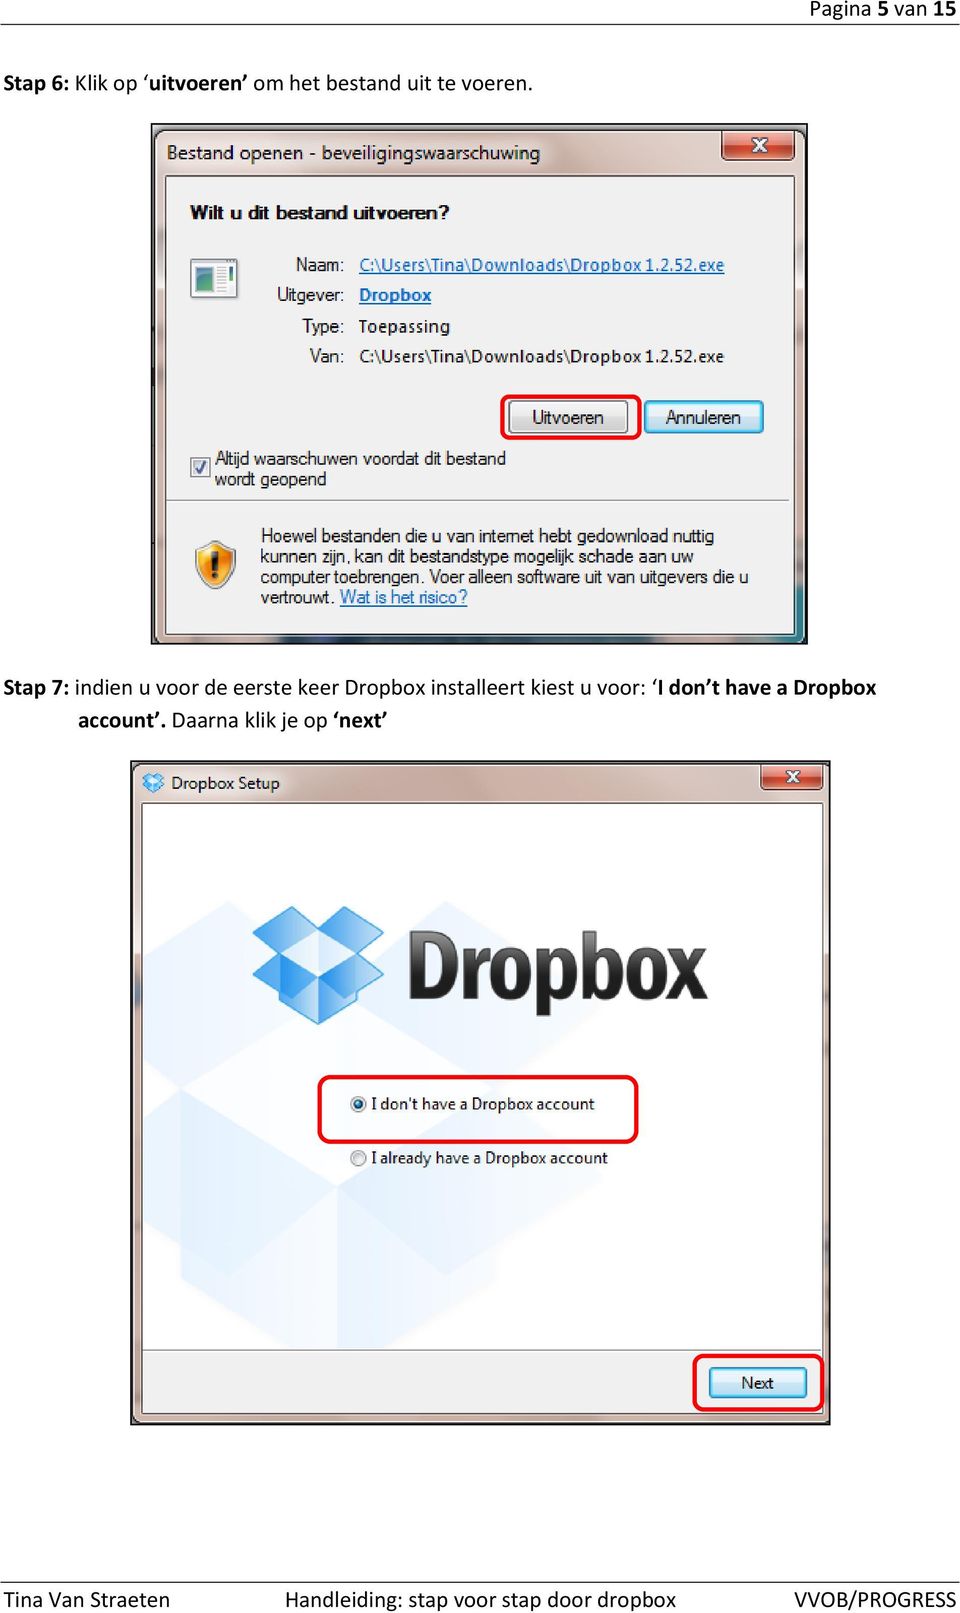 Stap 7: indien u voor de eerste keer Dropbox